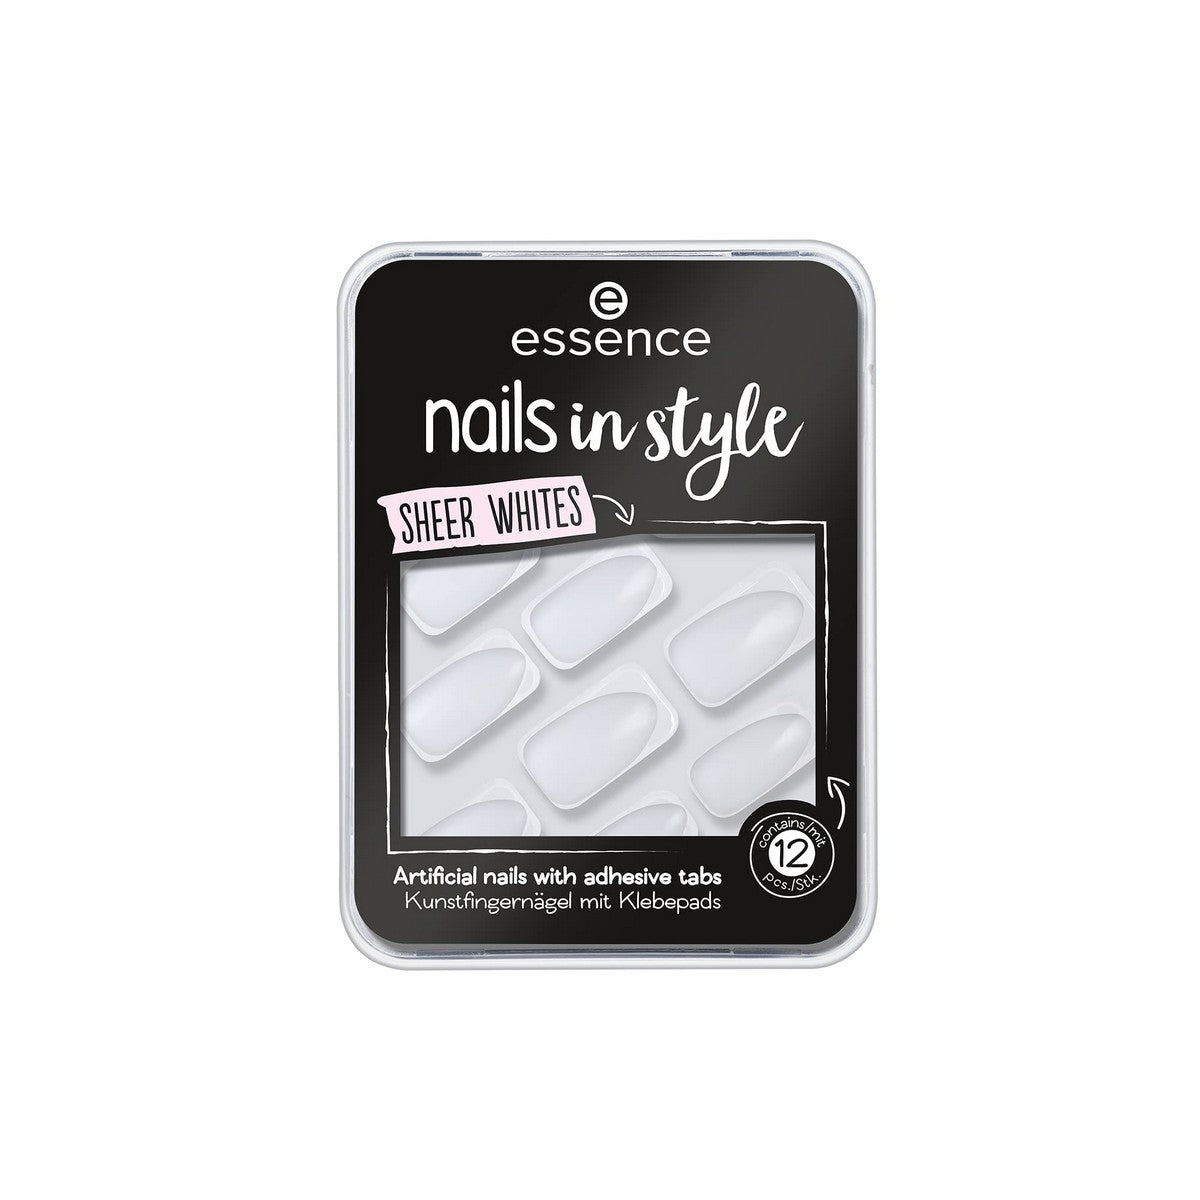 Falske negler Essence Nails in Style 11 Sheer Whites 12 enheter